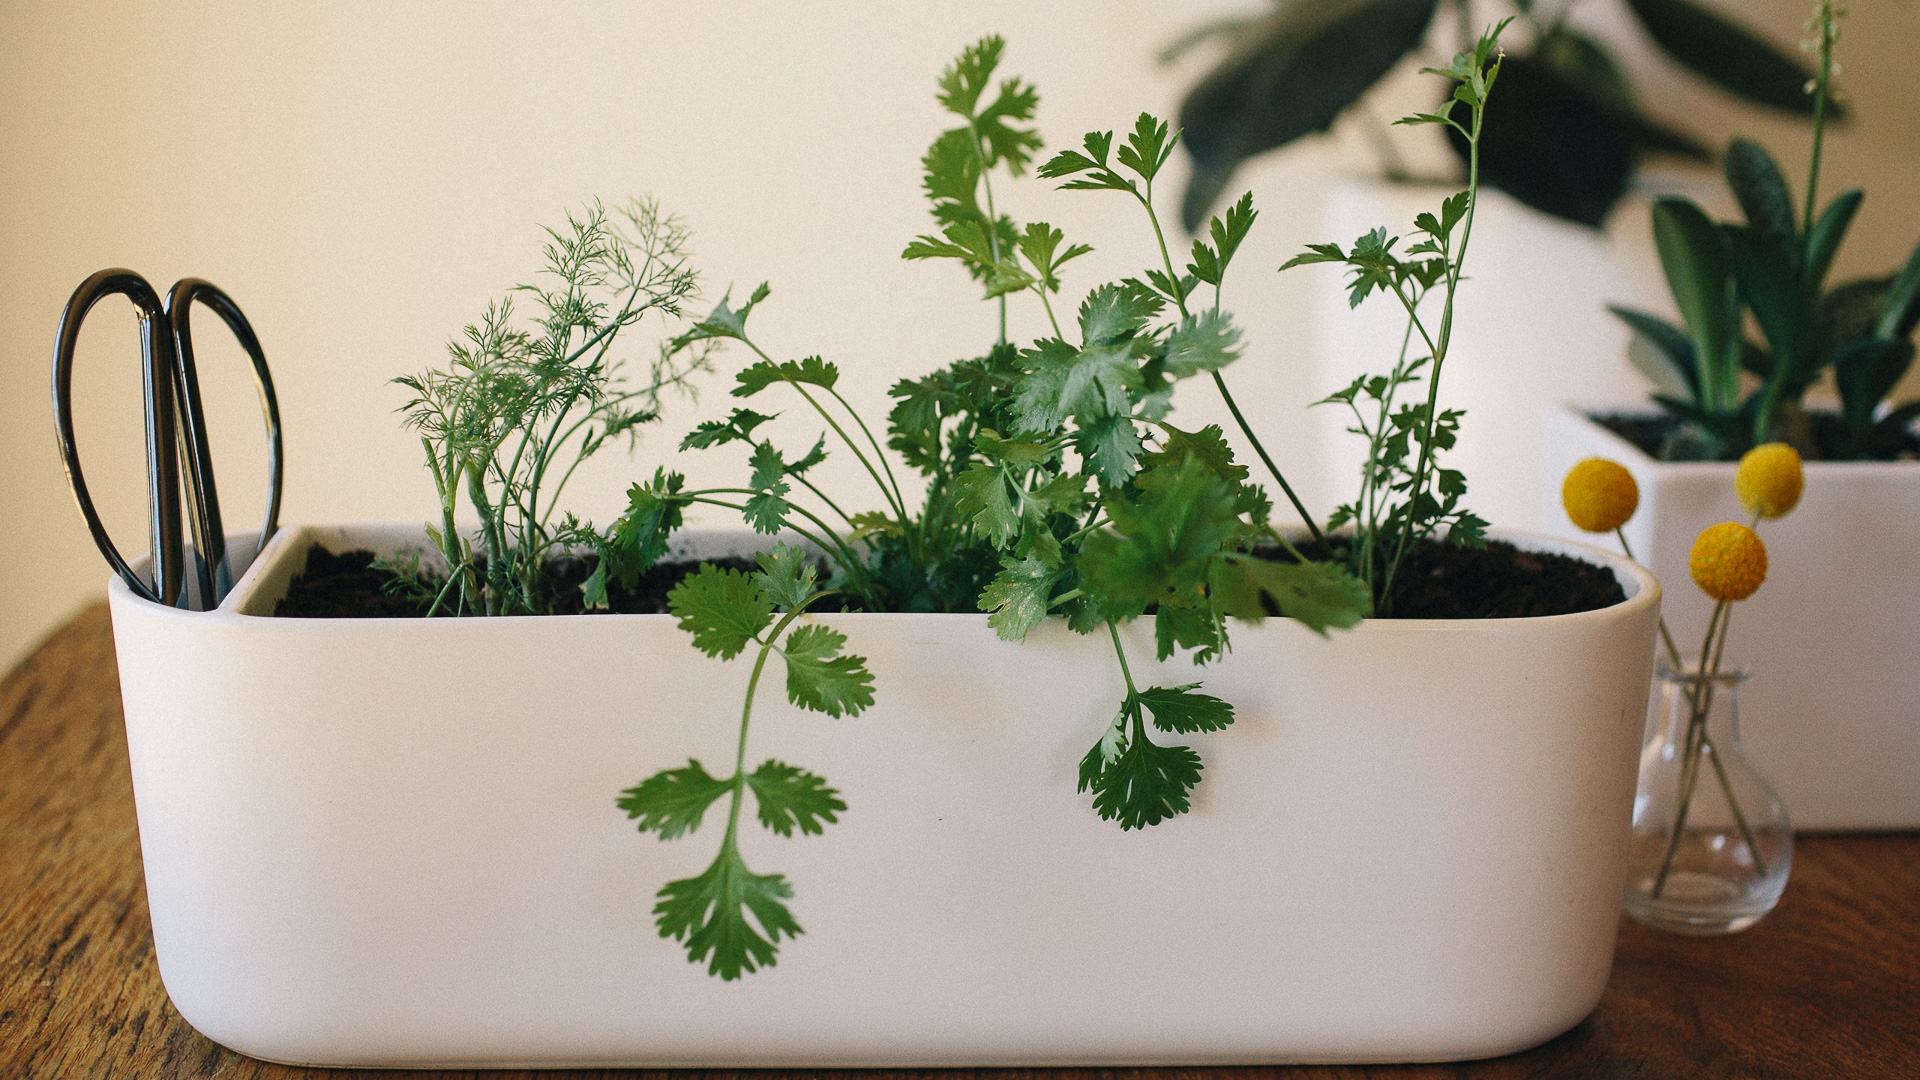 How to harvest indoor herb plants